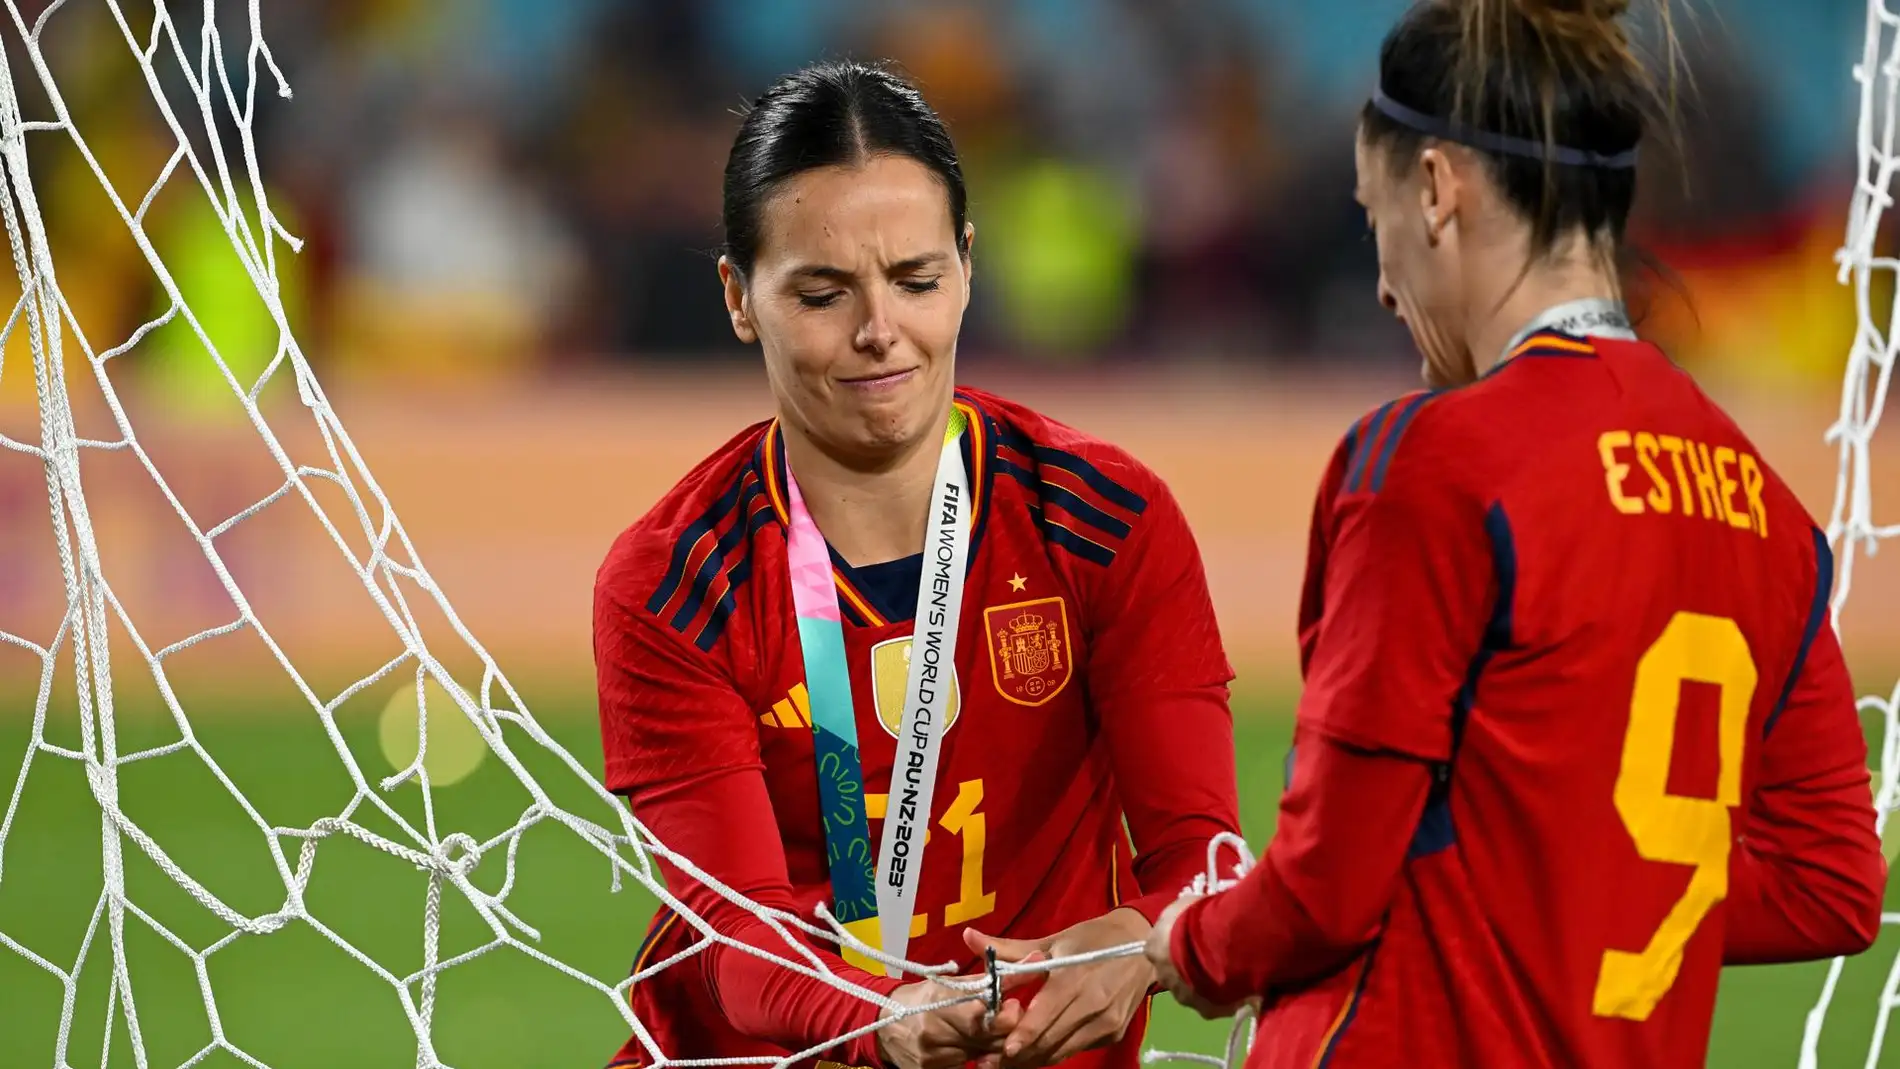 Claudia Zornoza y Esther González cortan la red de portería después de ganar la final del Mundial.